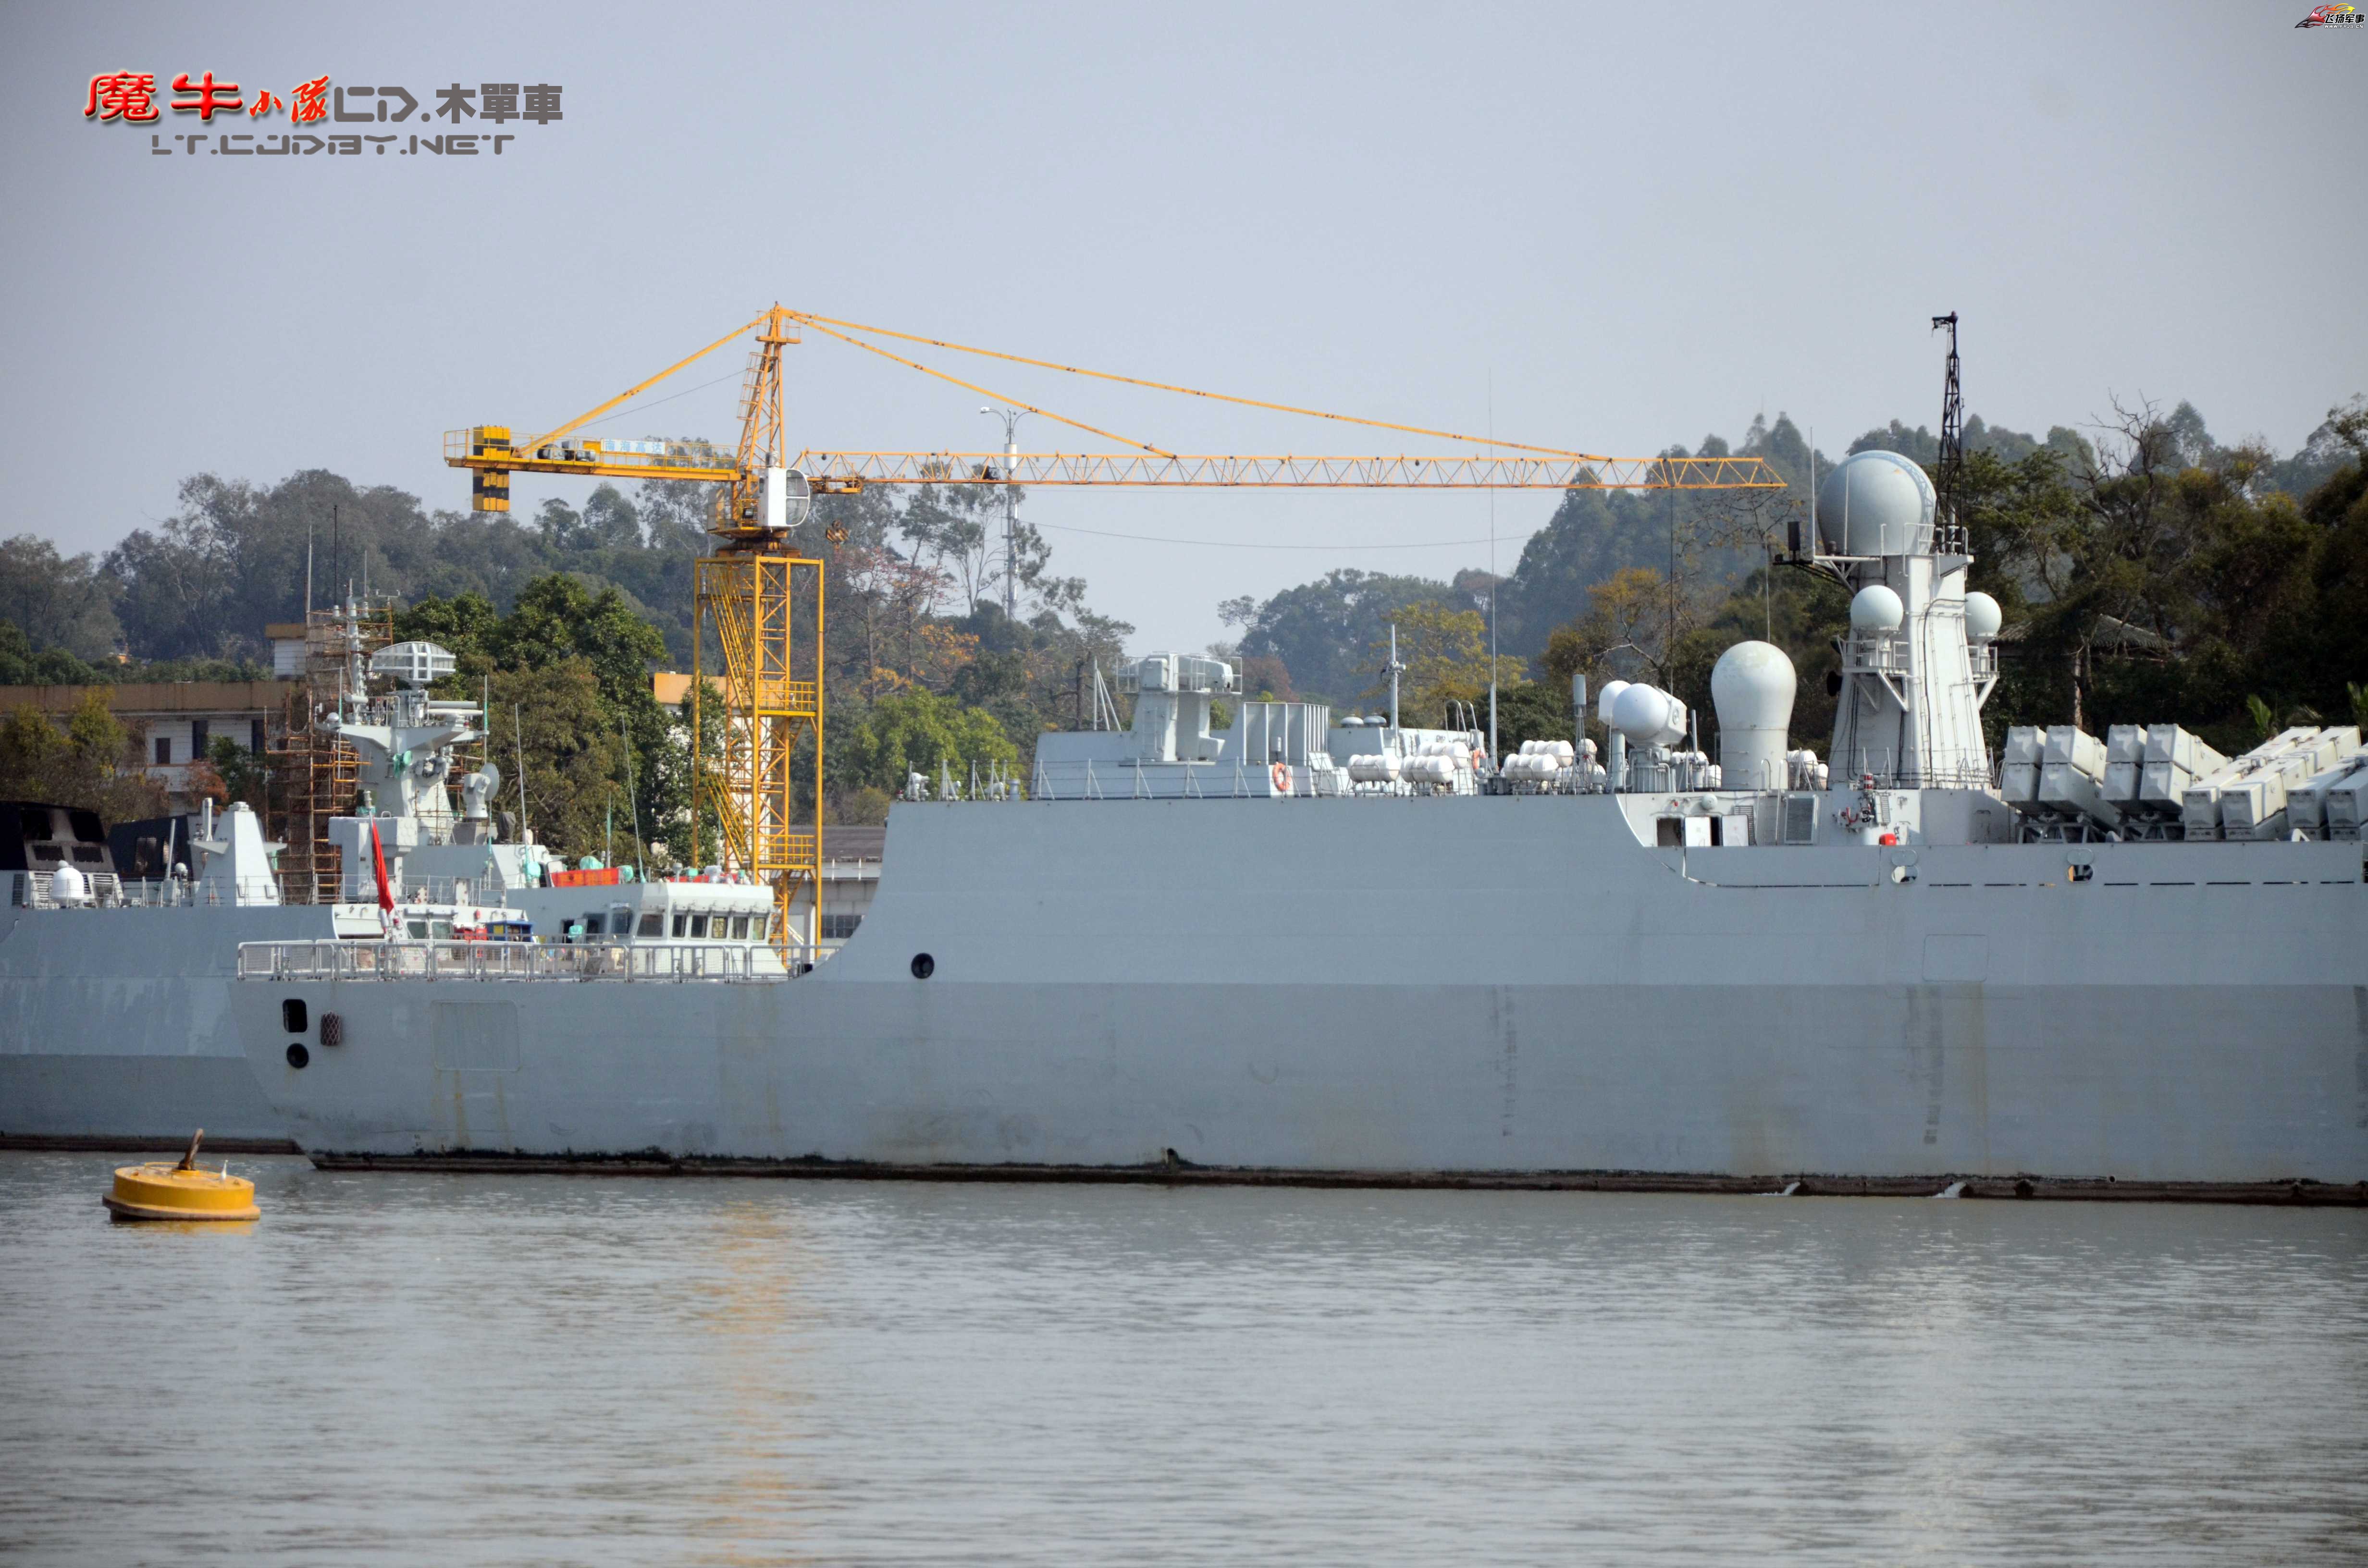 南海舰队广州图片